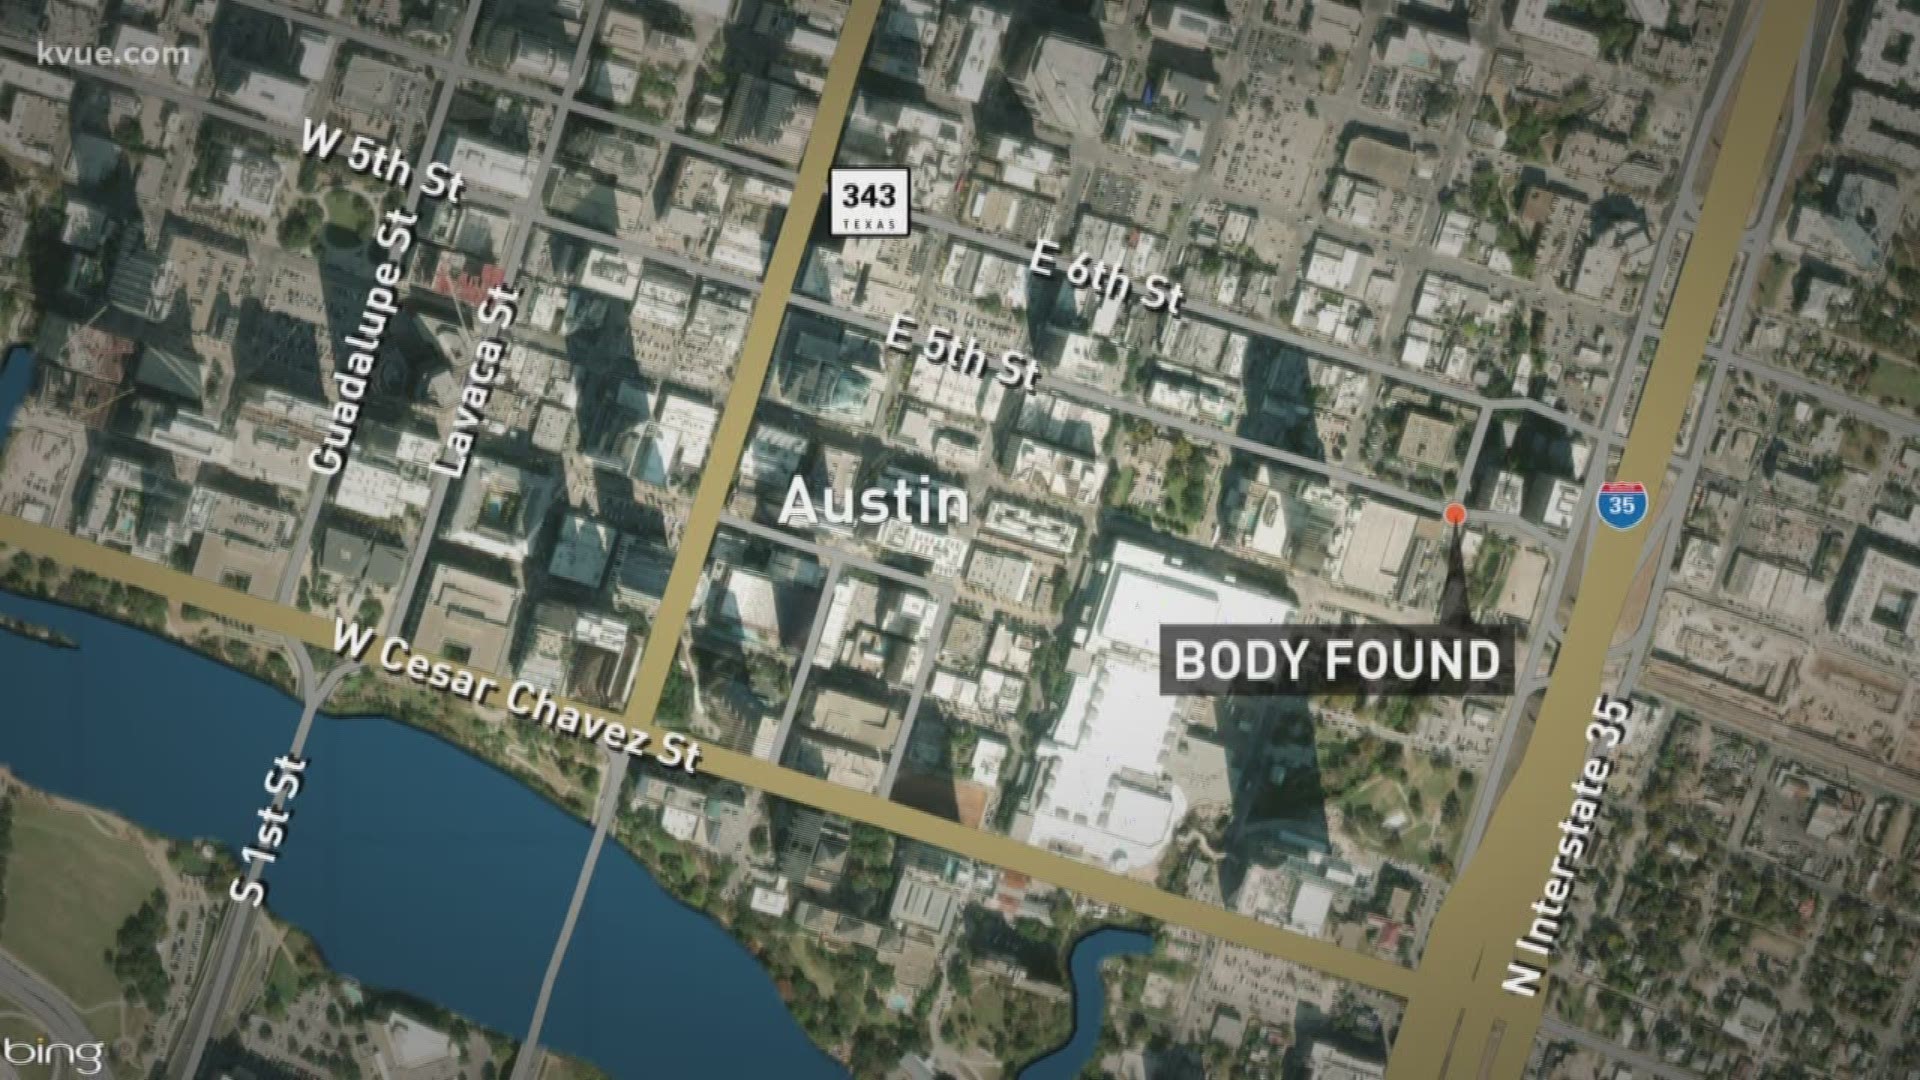 Body found near creek in downtown Austin